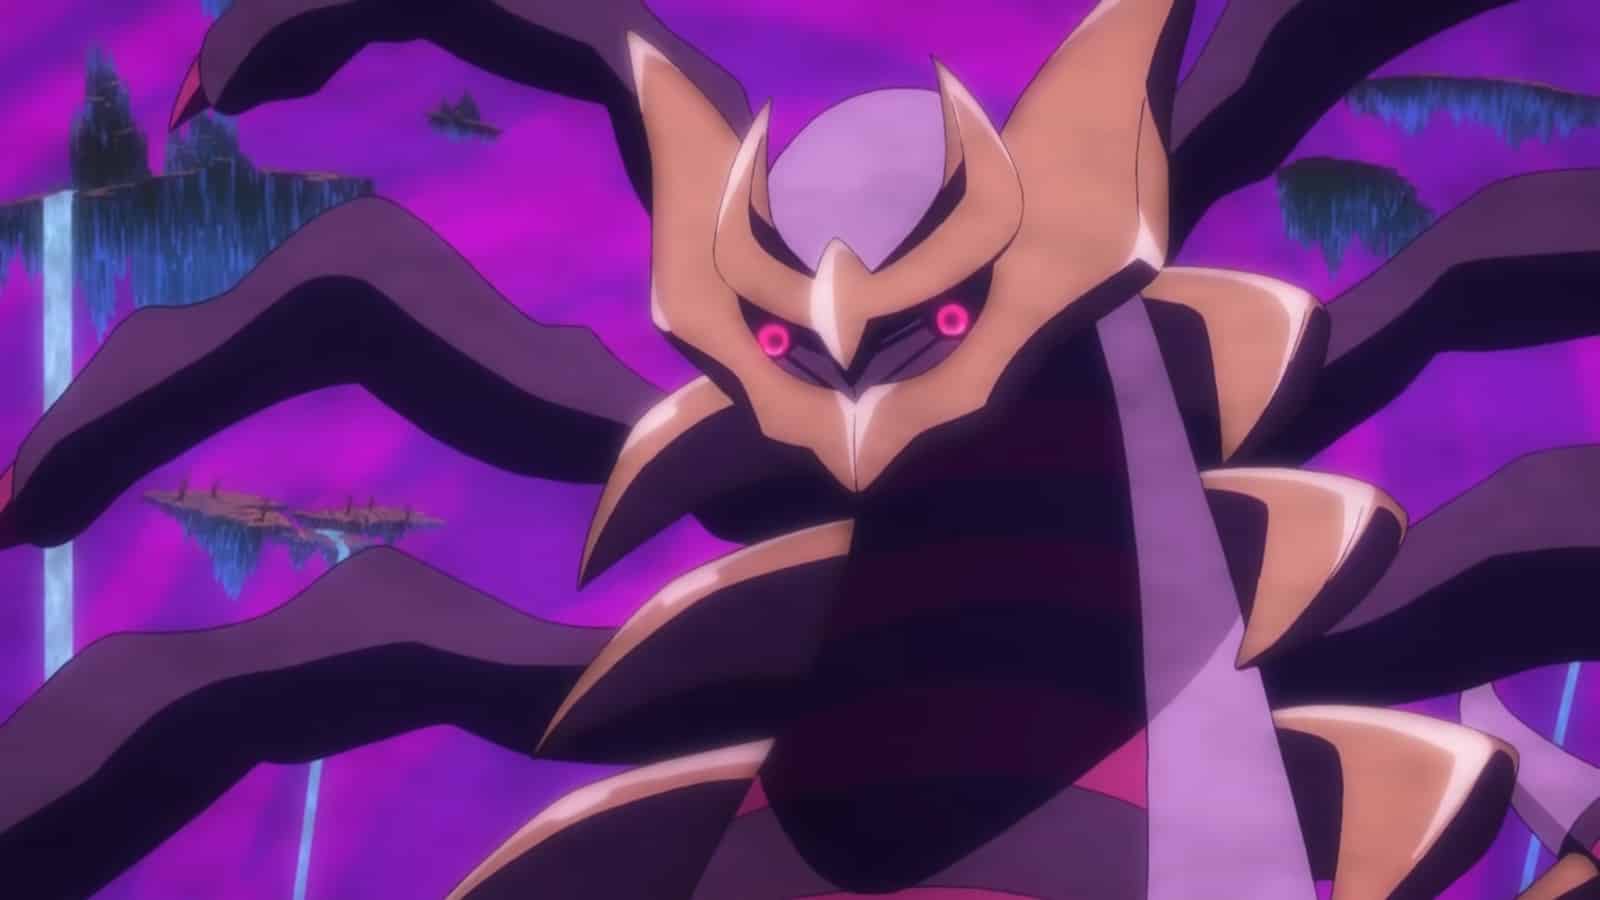 Giratina Origin Forme in the Pokemon anime